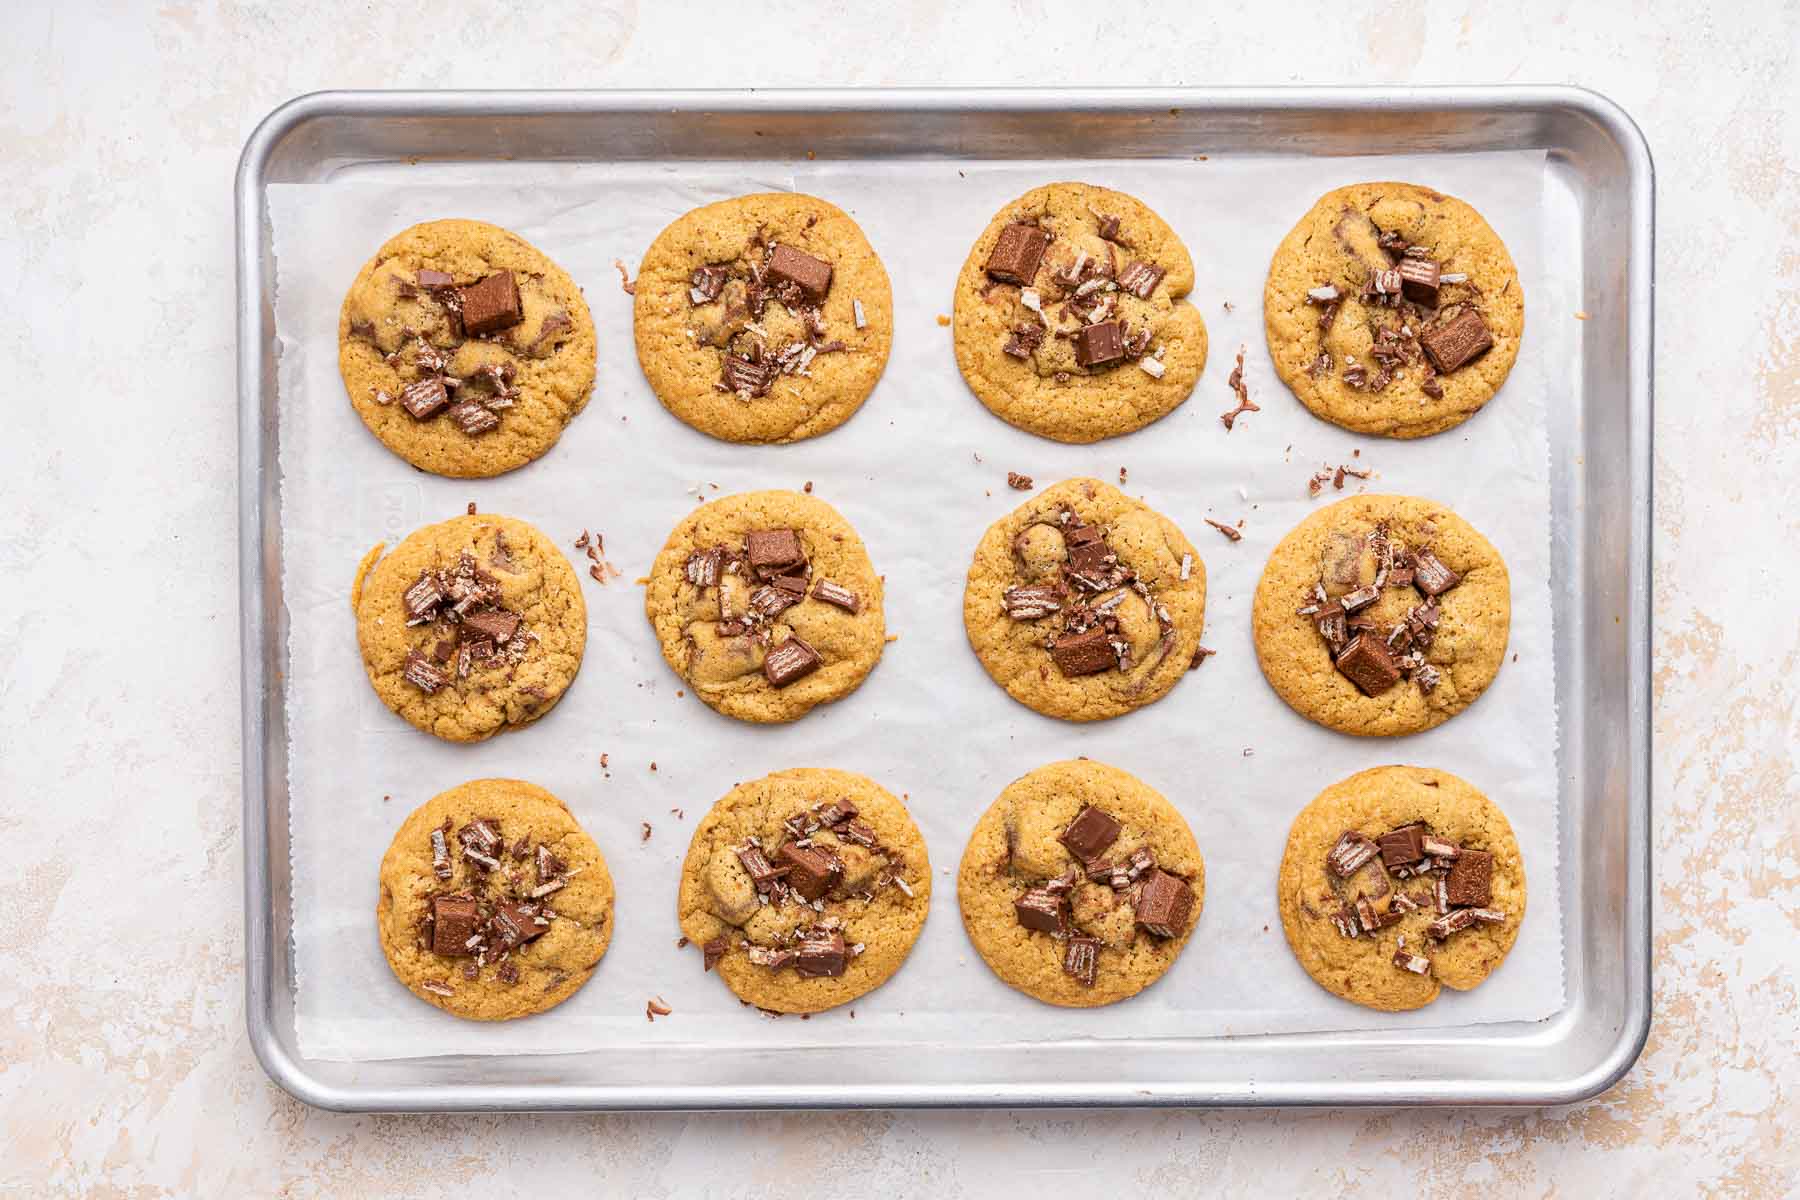 Kit Kat cookies, freshly baked on a baking sheet.